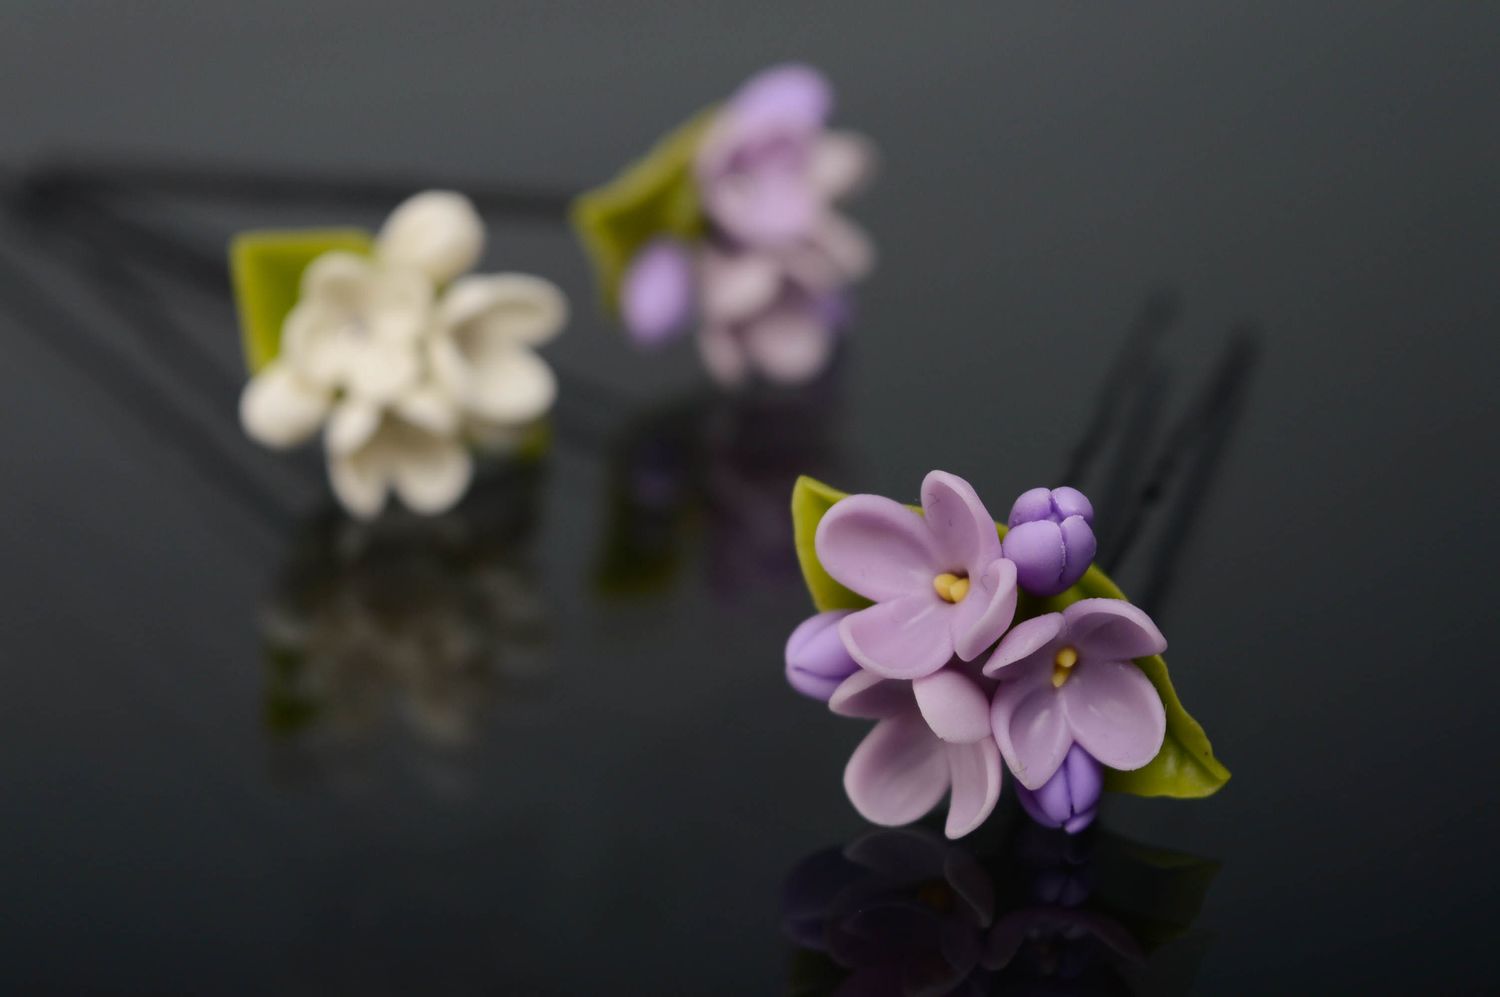 Épingle à cheveux en porcelaine froide faite main originale avec fleurs Lilas photo 4